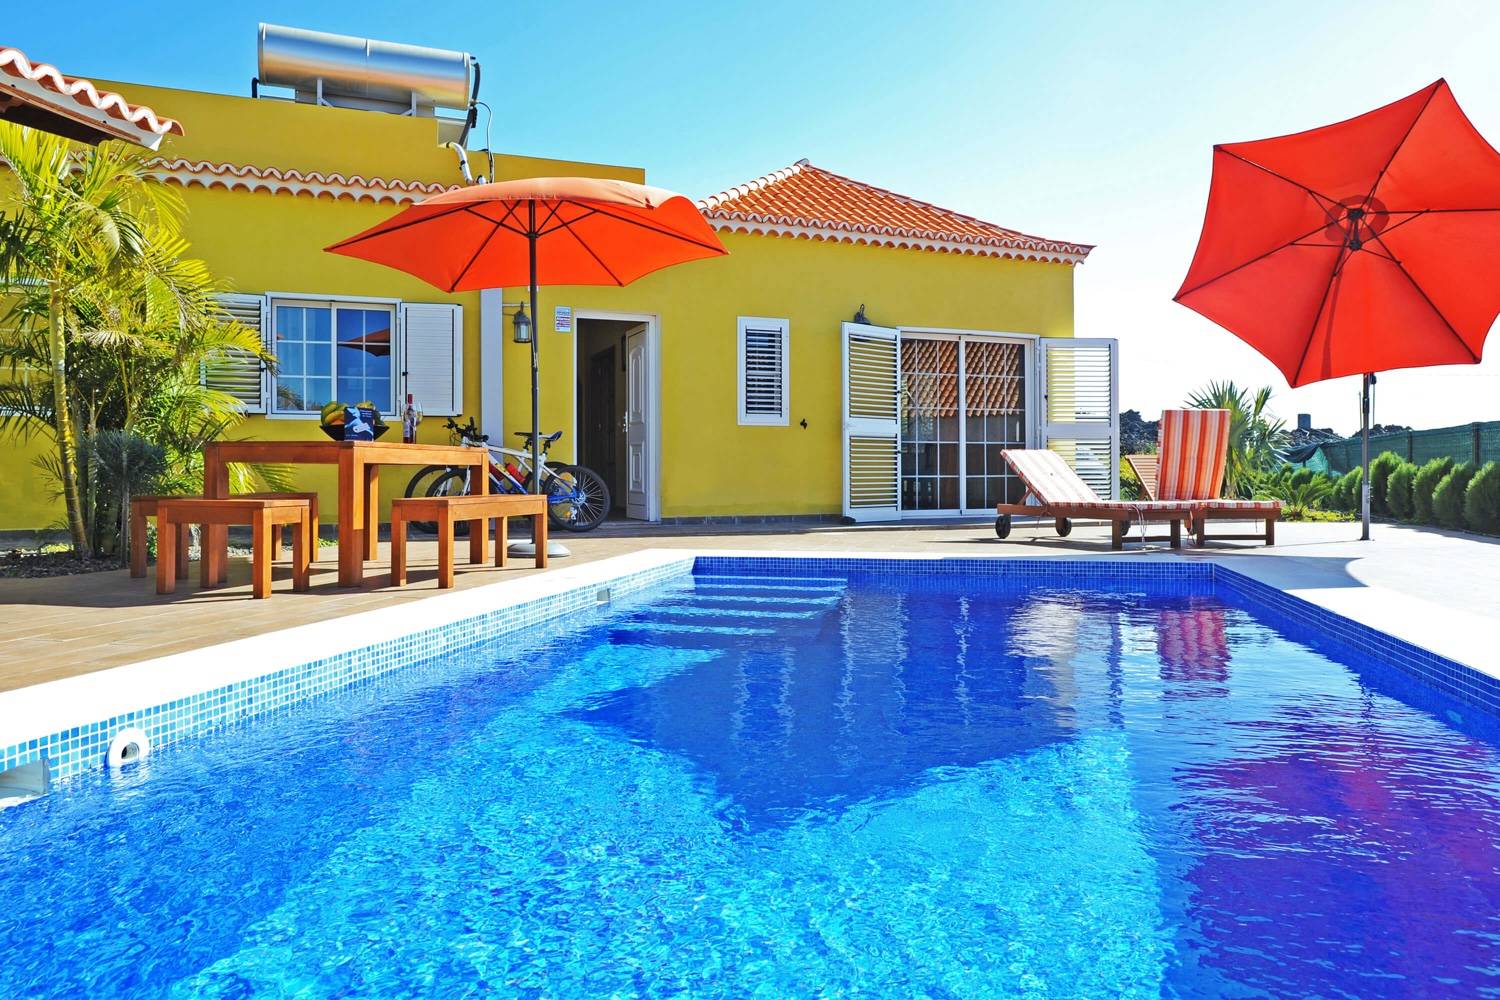 Casa de vacaciones con bonita zona exterior, piscina y cocina al aire libre en la zona rural de Las Manchas